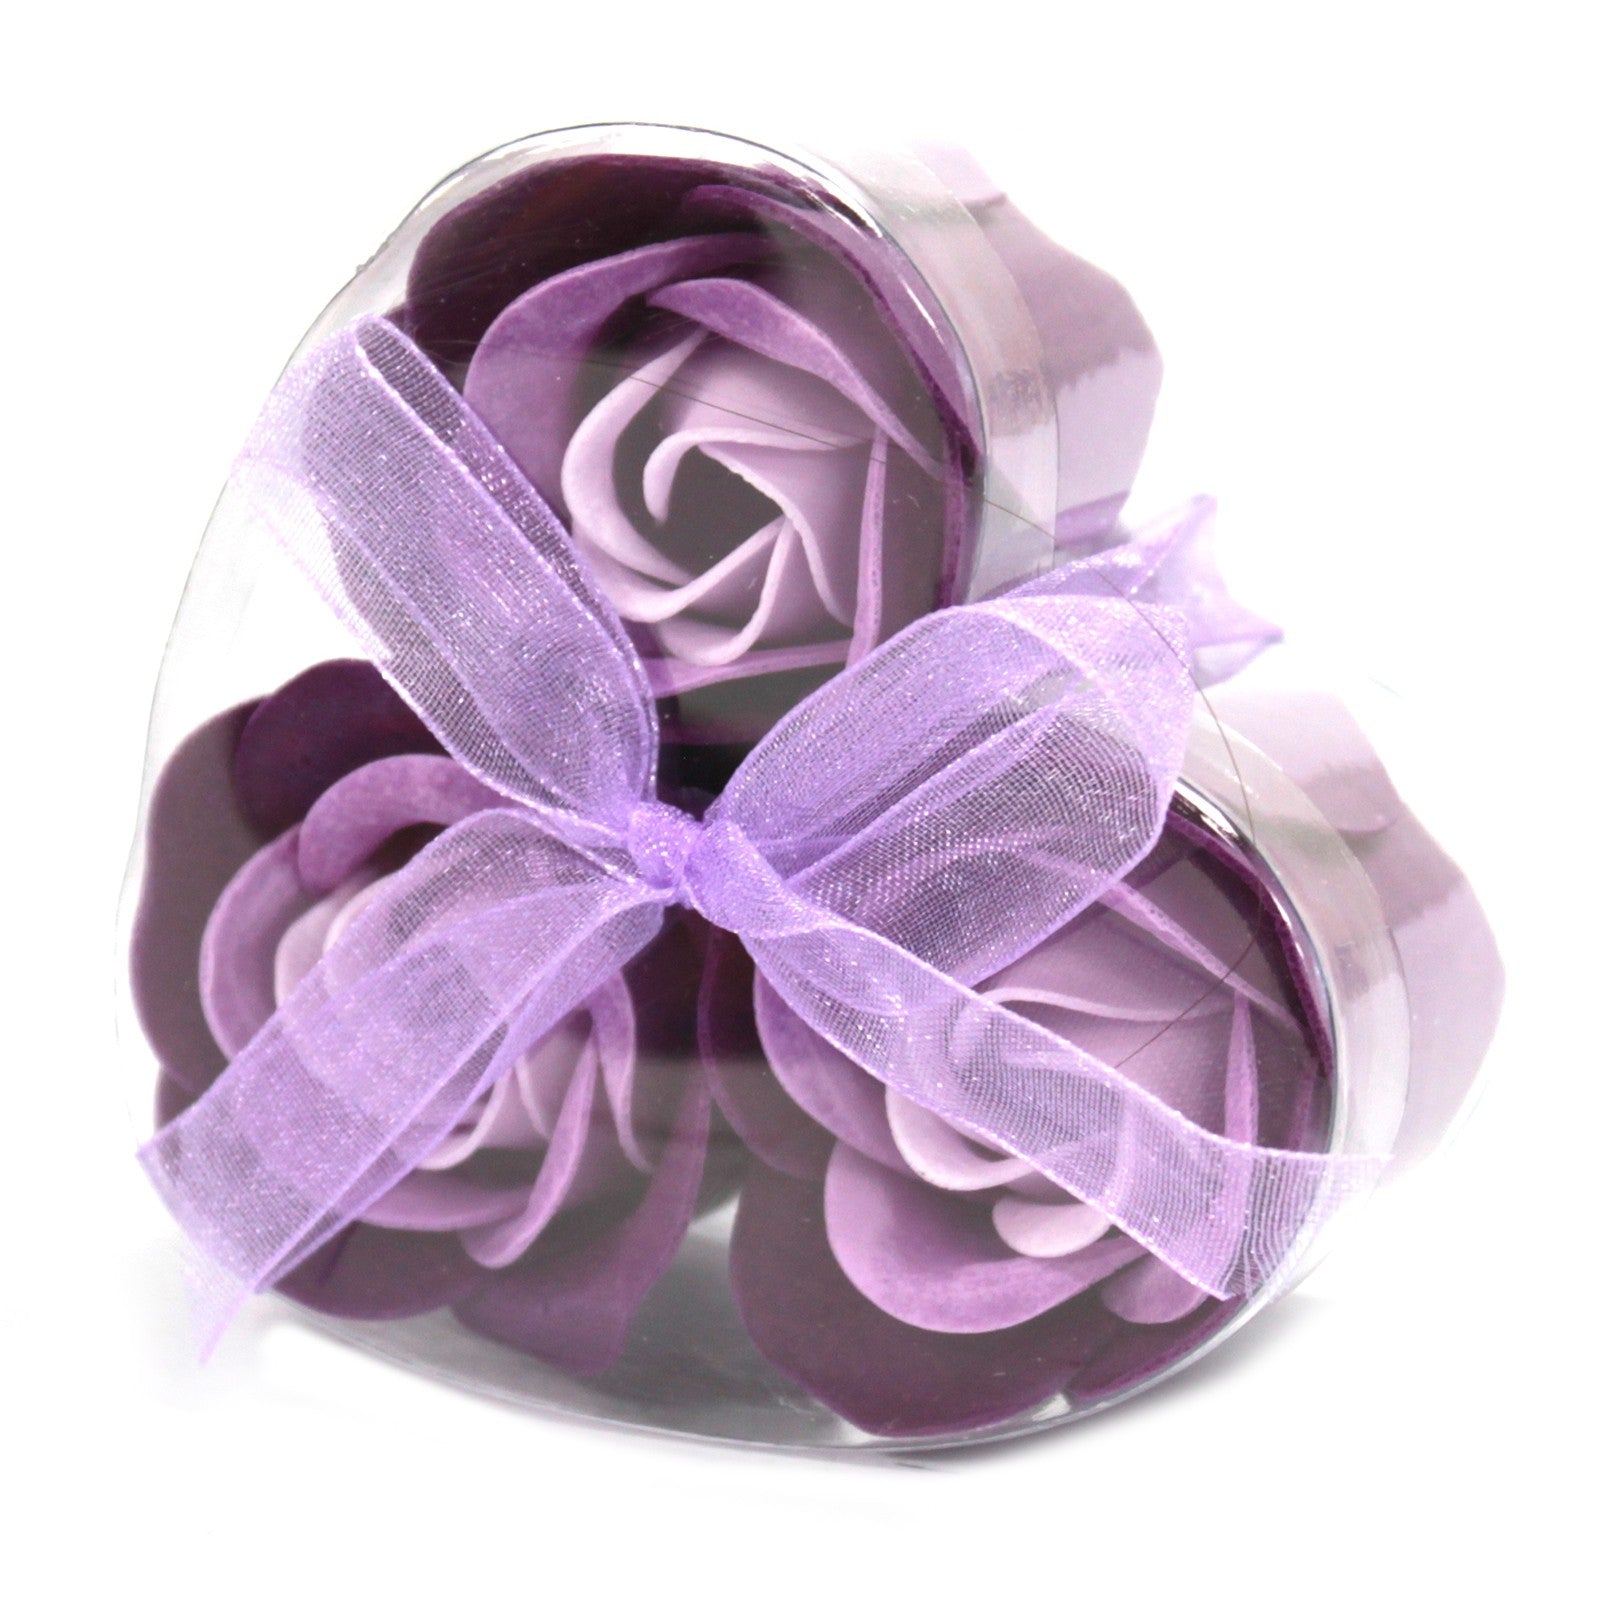 Soap Flower Heart Box - 3 Lavender Roses